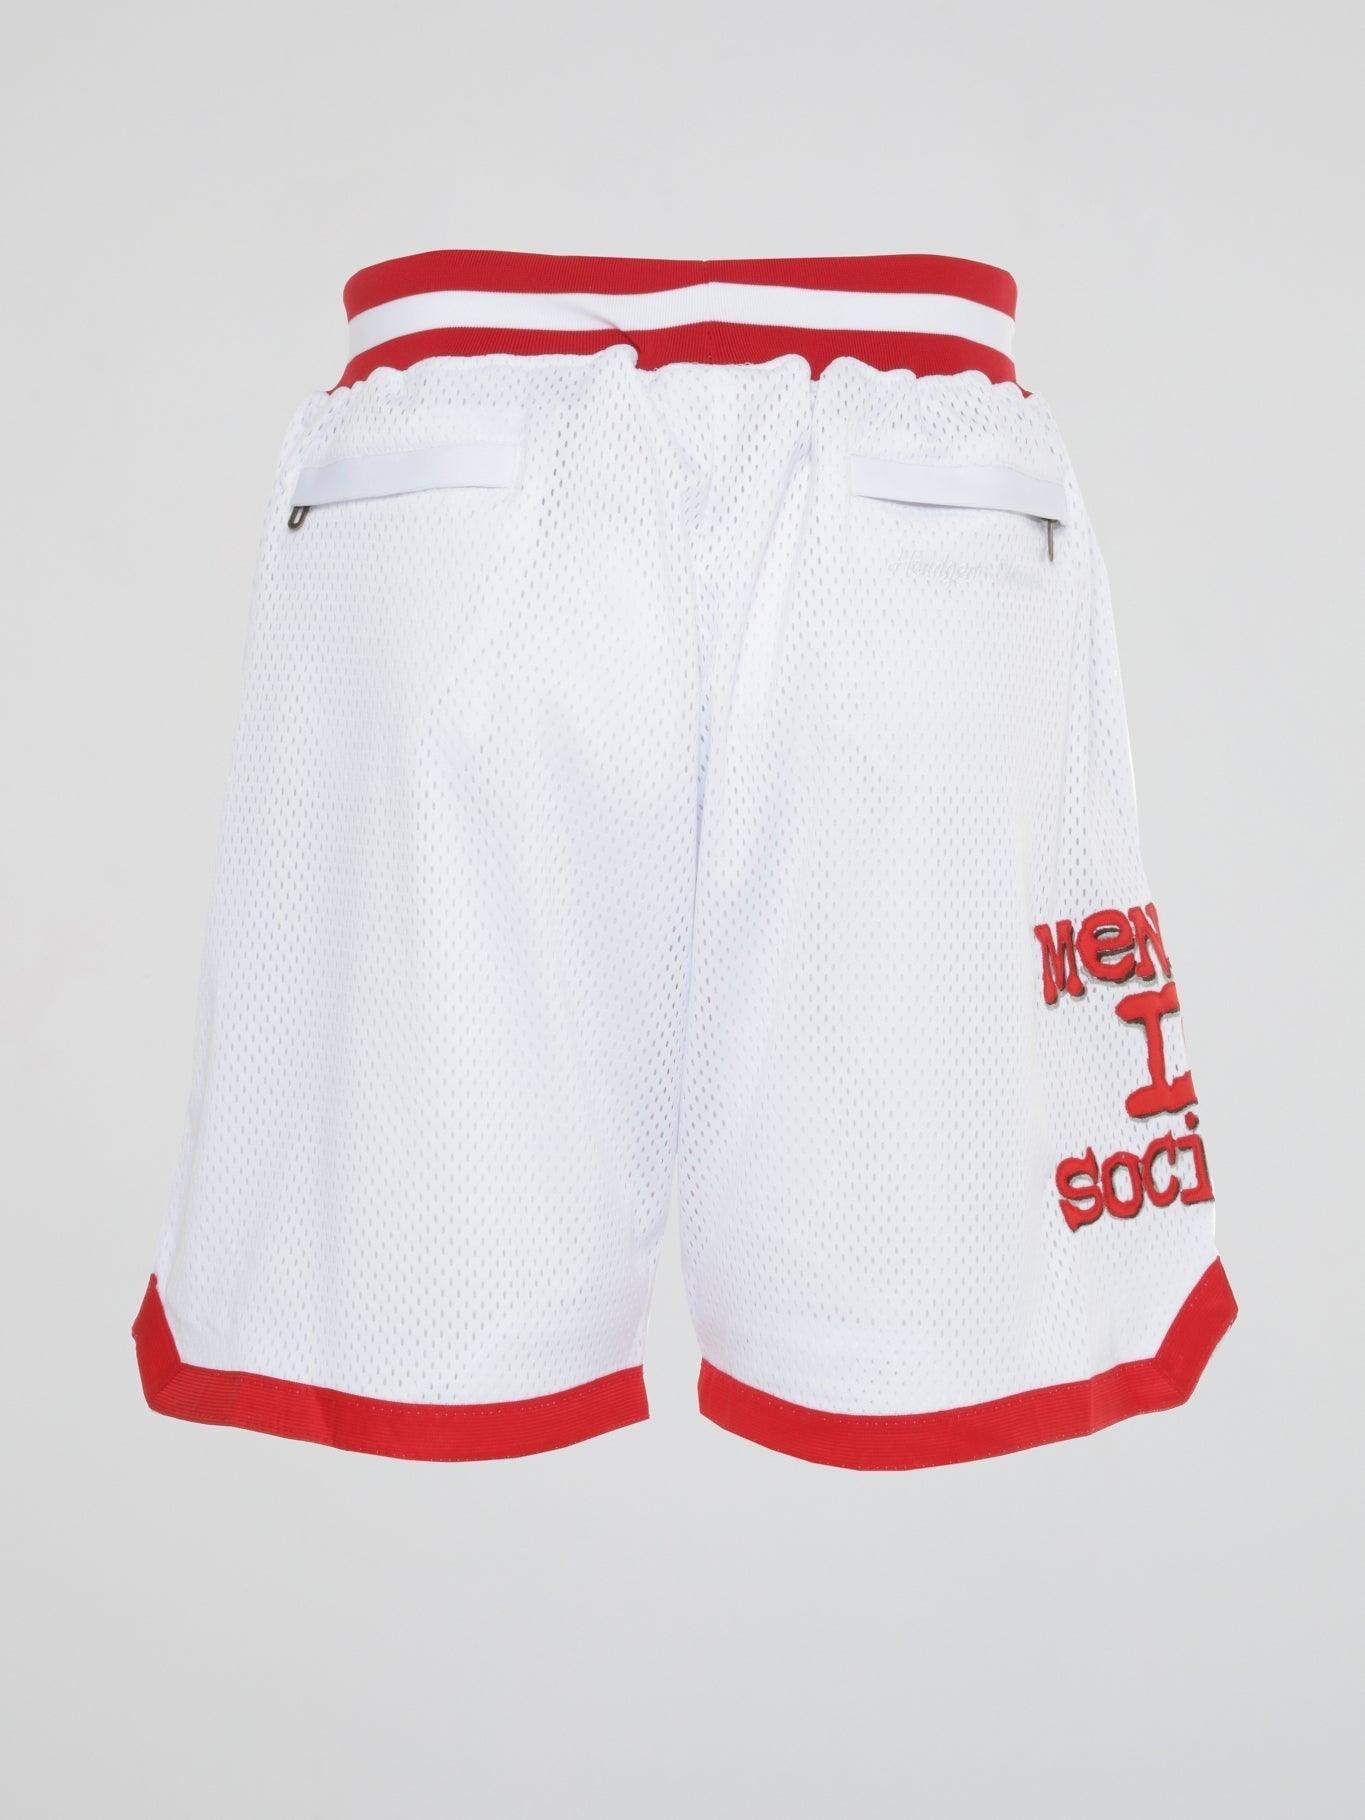 Menace II Society Basketball Shorts - B-Hype Society